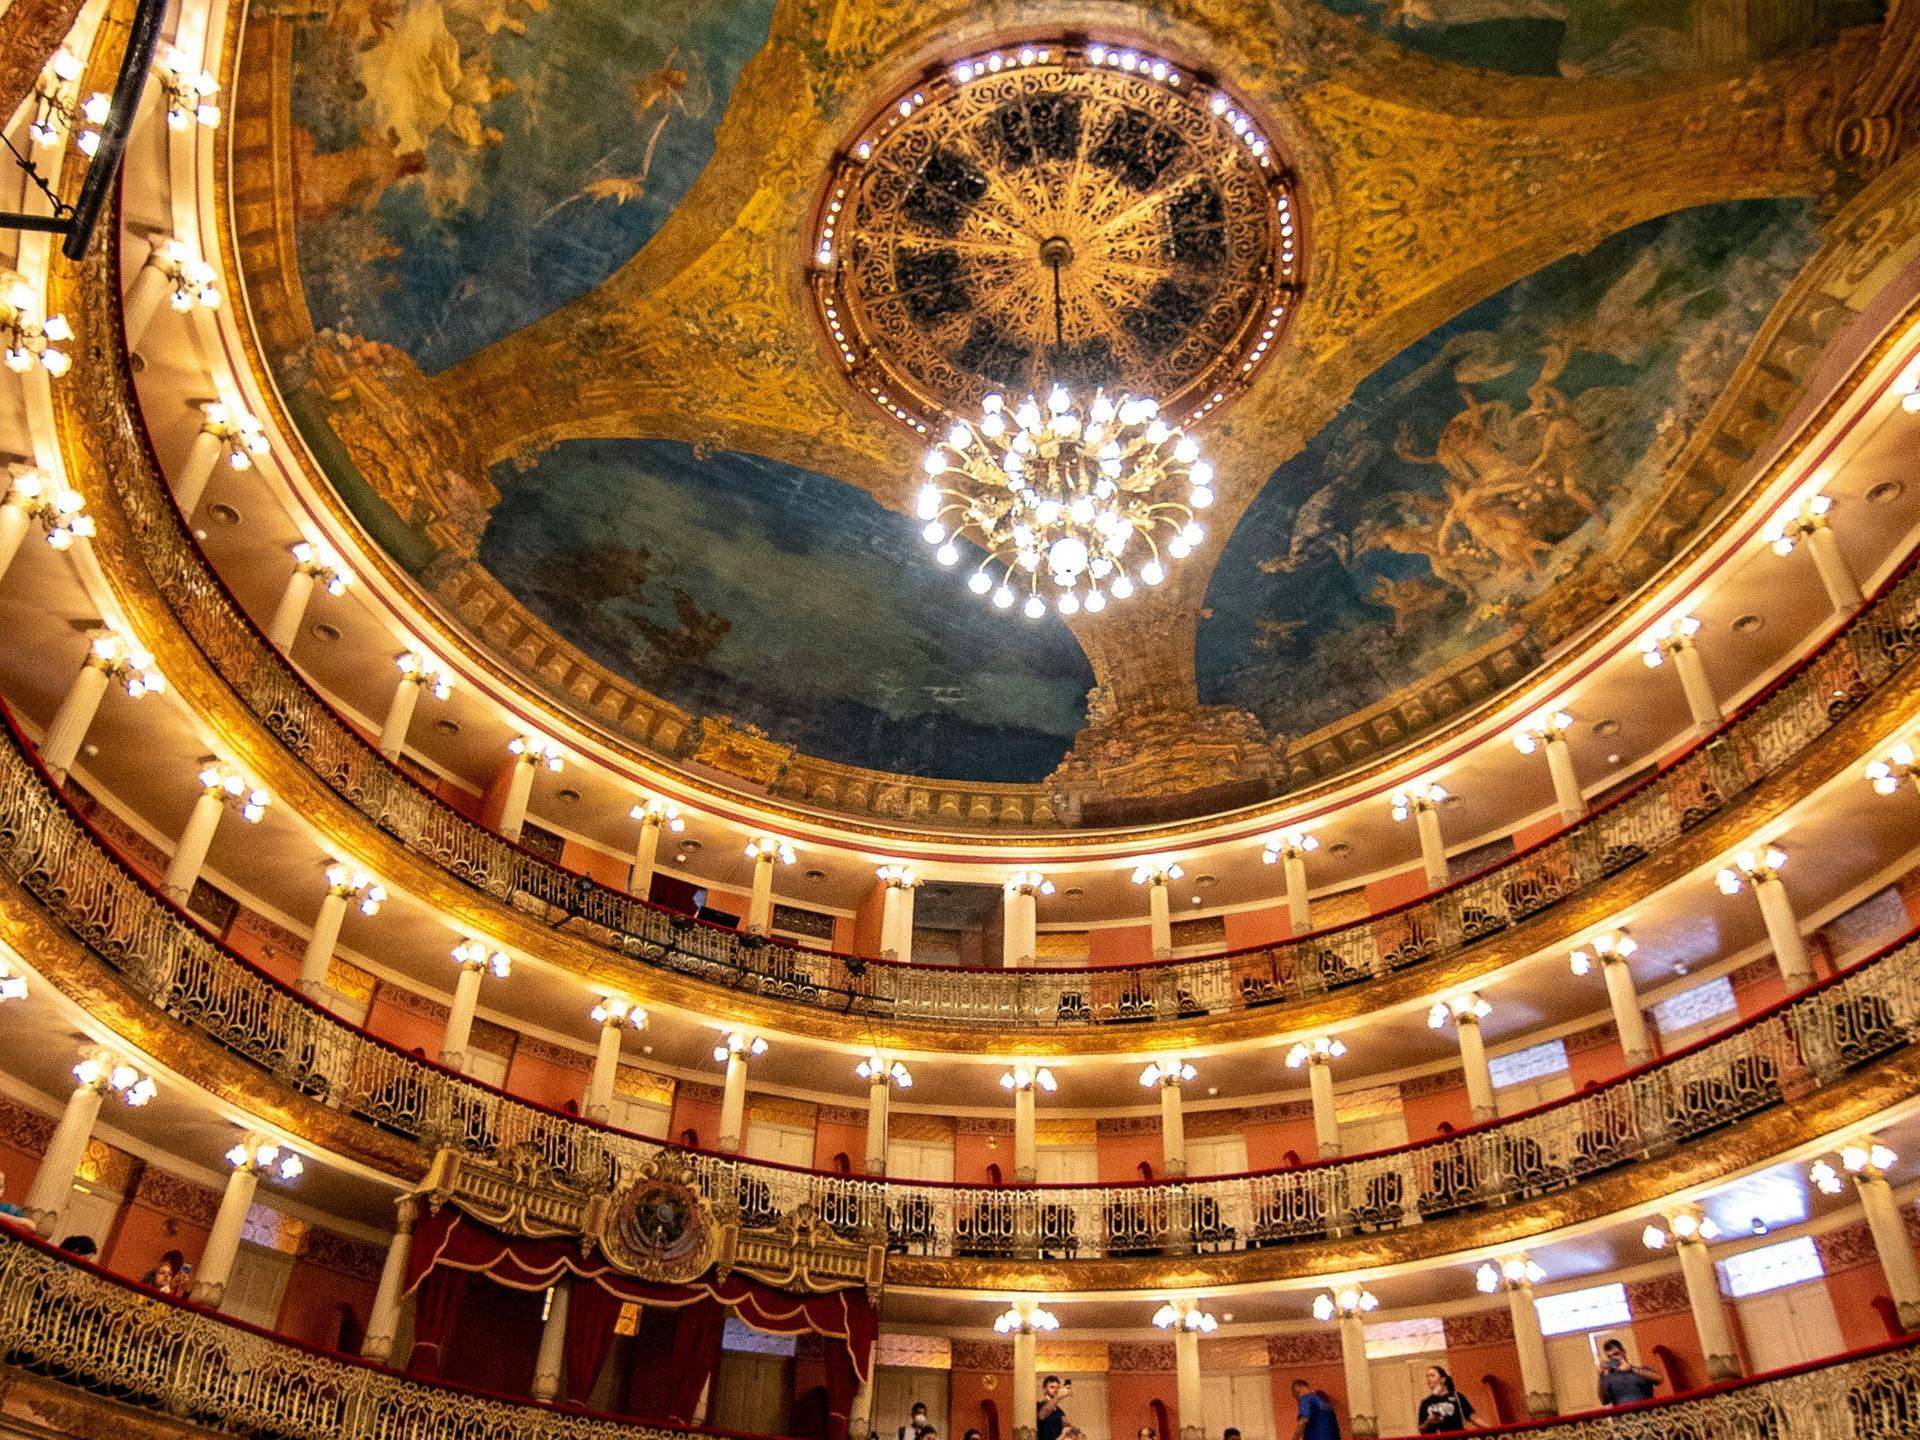 Blick in den Innenraum des Opernhauses in Manaus mit seinem imposanten Deckengemälde, Kronleuchter und vielen schmucken Rängen.